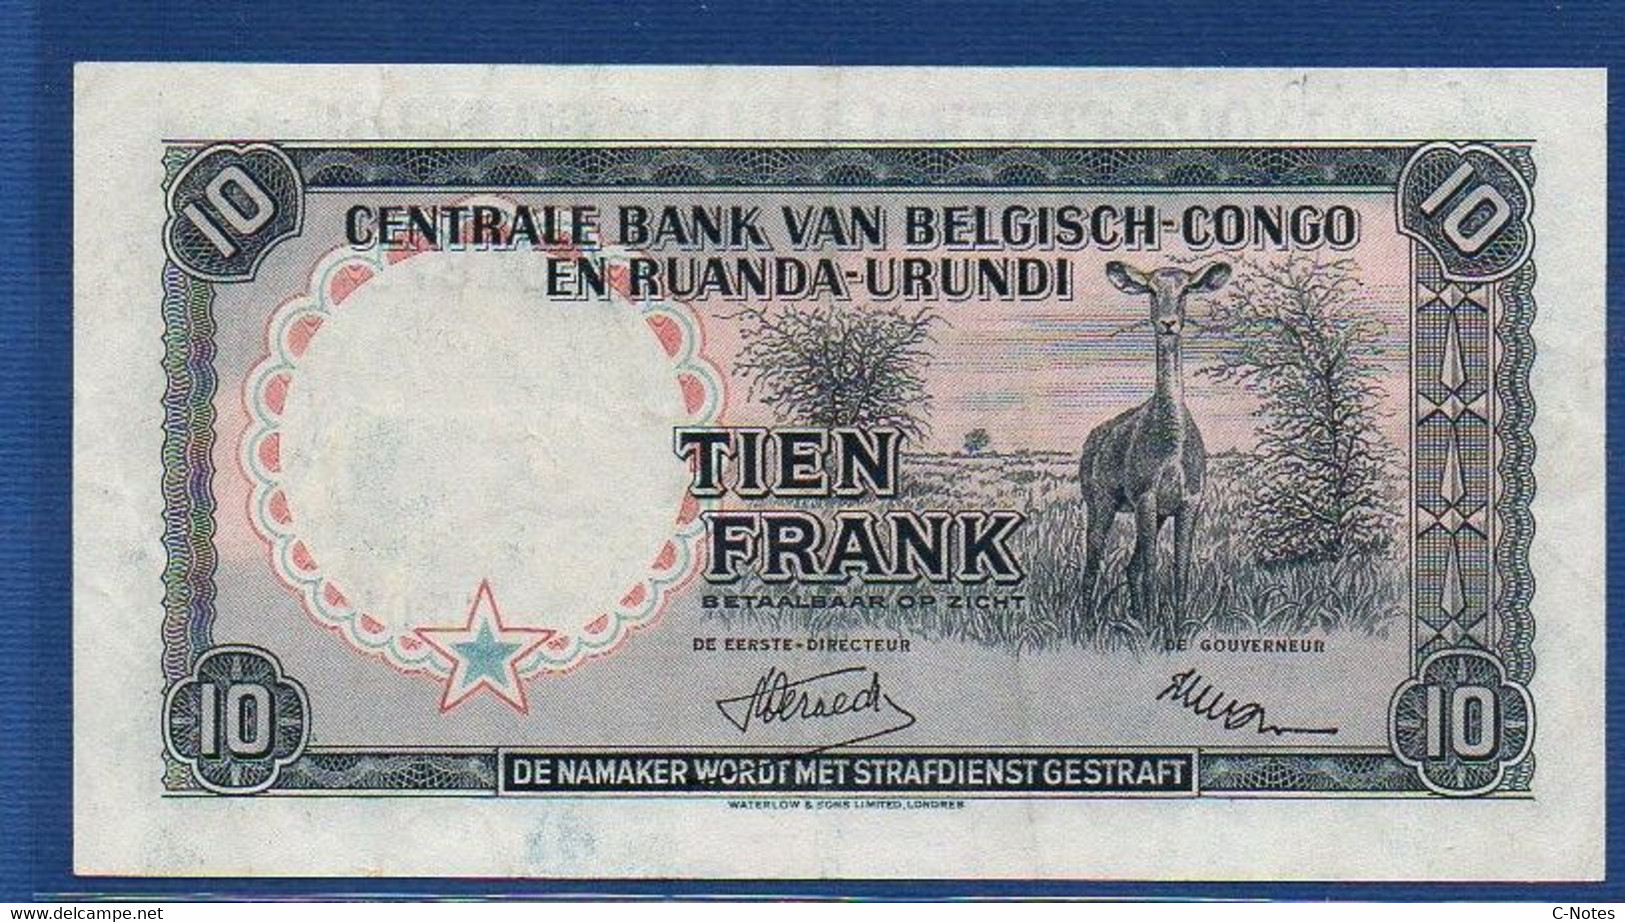 BELGIAN CONGO - P.30a - 10 Francs 15.01.1955 XF, Serie F091879 - Bank Van Belgisch Kongo